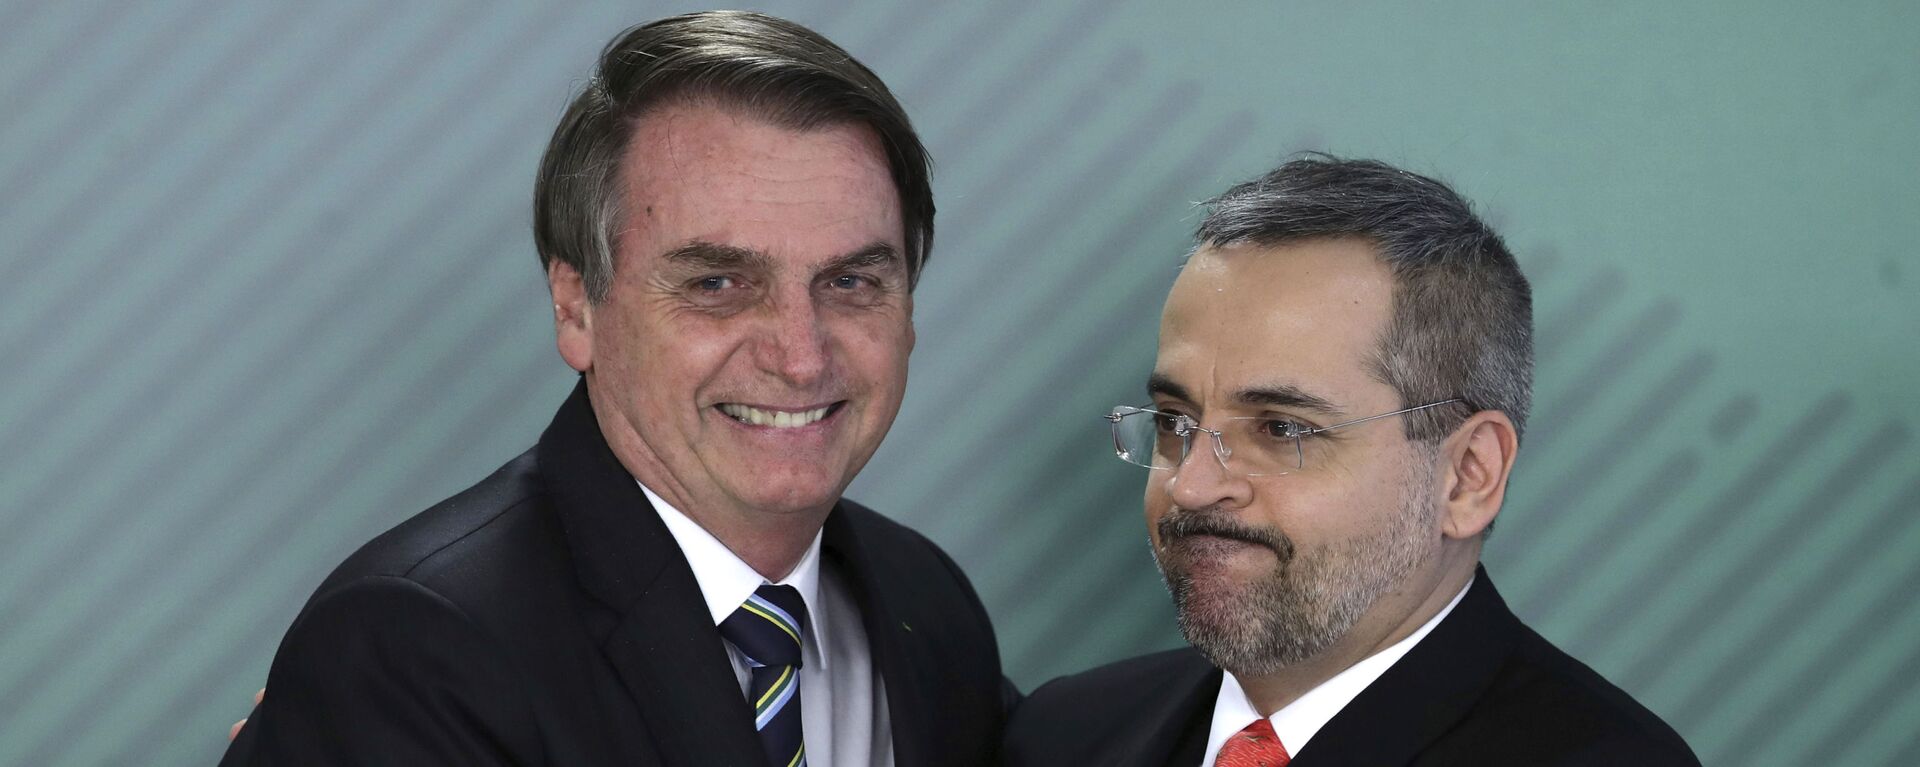 O presidente Jair Bolsonaro e o ministro da Educação Abraham Weintraub - Sputnik Brasil, 1920, 19.01.2022